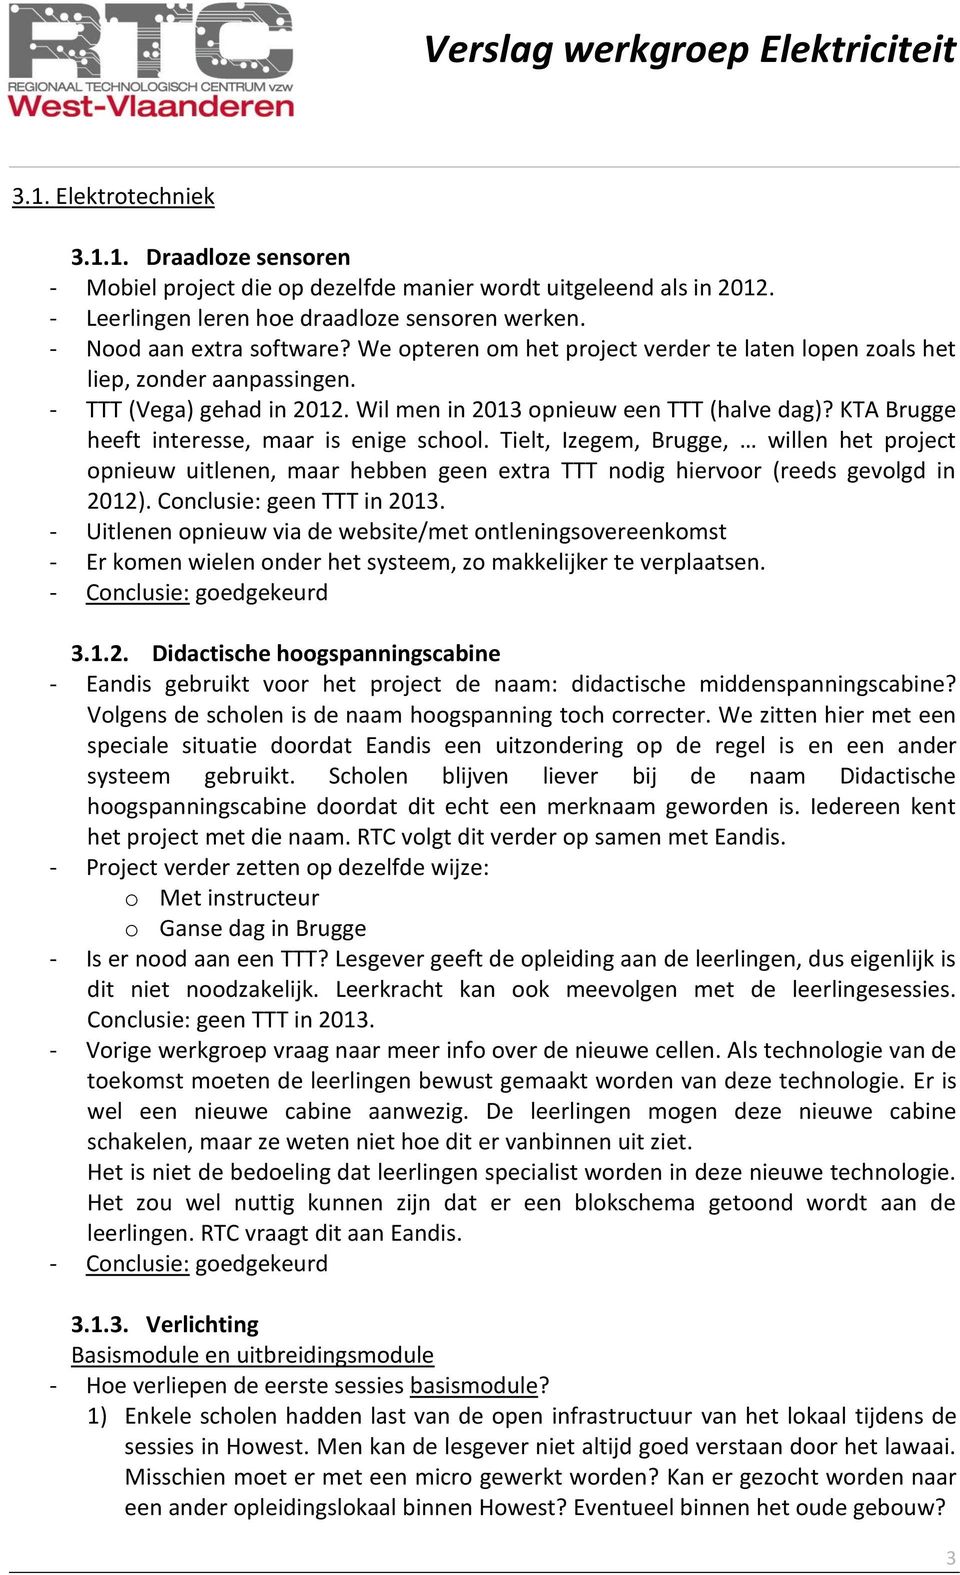 KTA Brugge heeft interesse, maar is enige school. Tielt, Izegem, Brugge, willen het project opnieuw uitlenen, maar hebben geen extra TTT nodig hiervoor (reeds gevolgd in 2012).